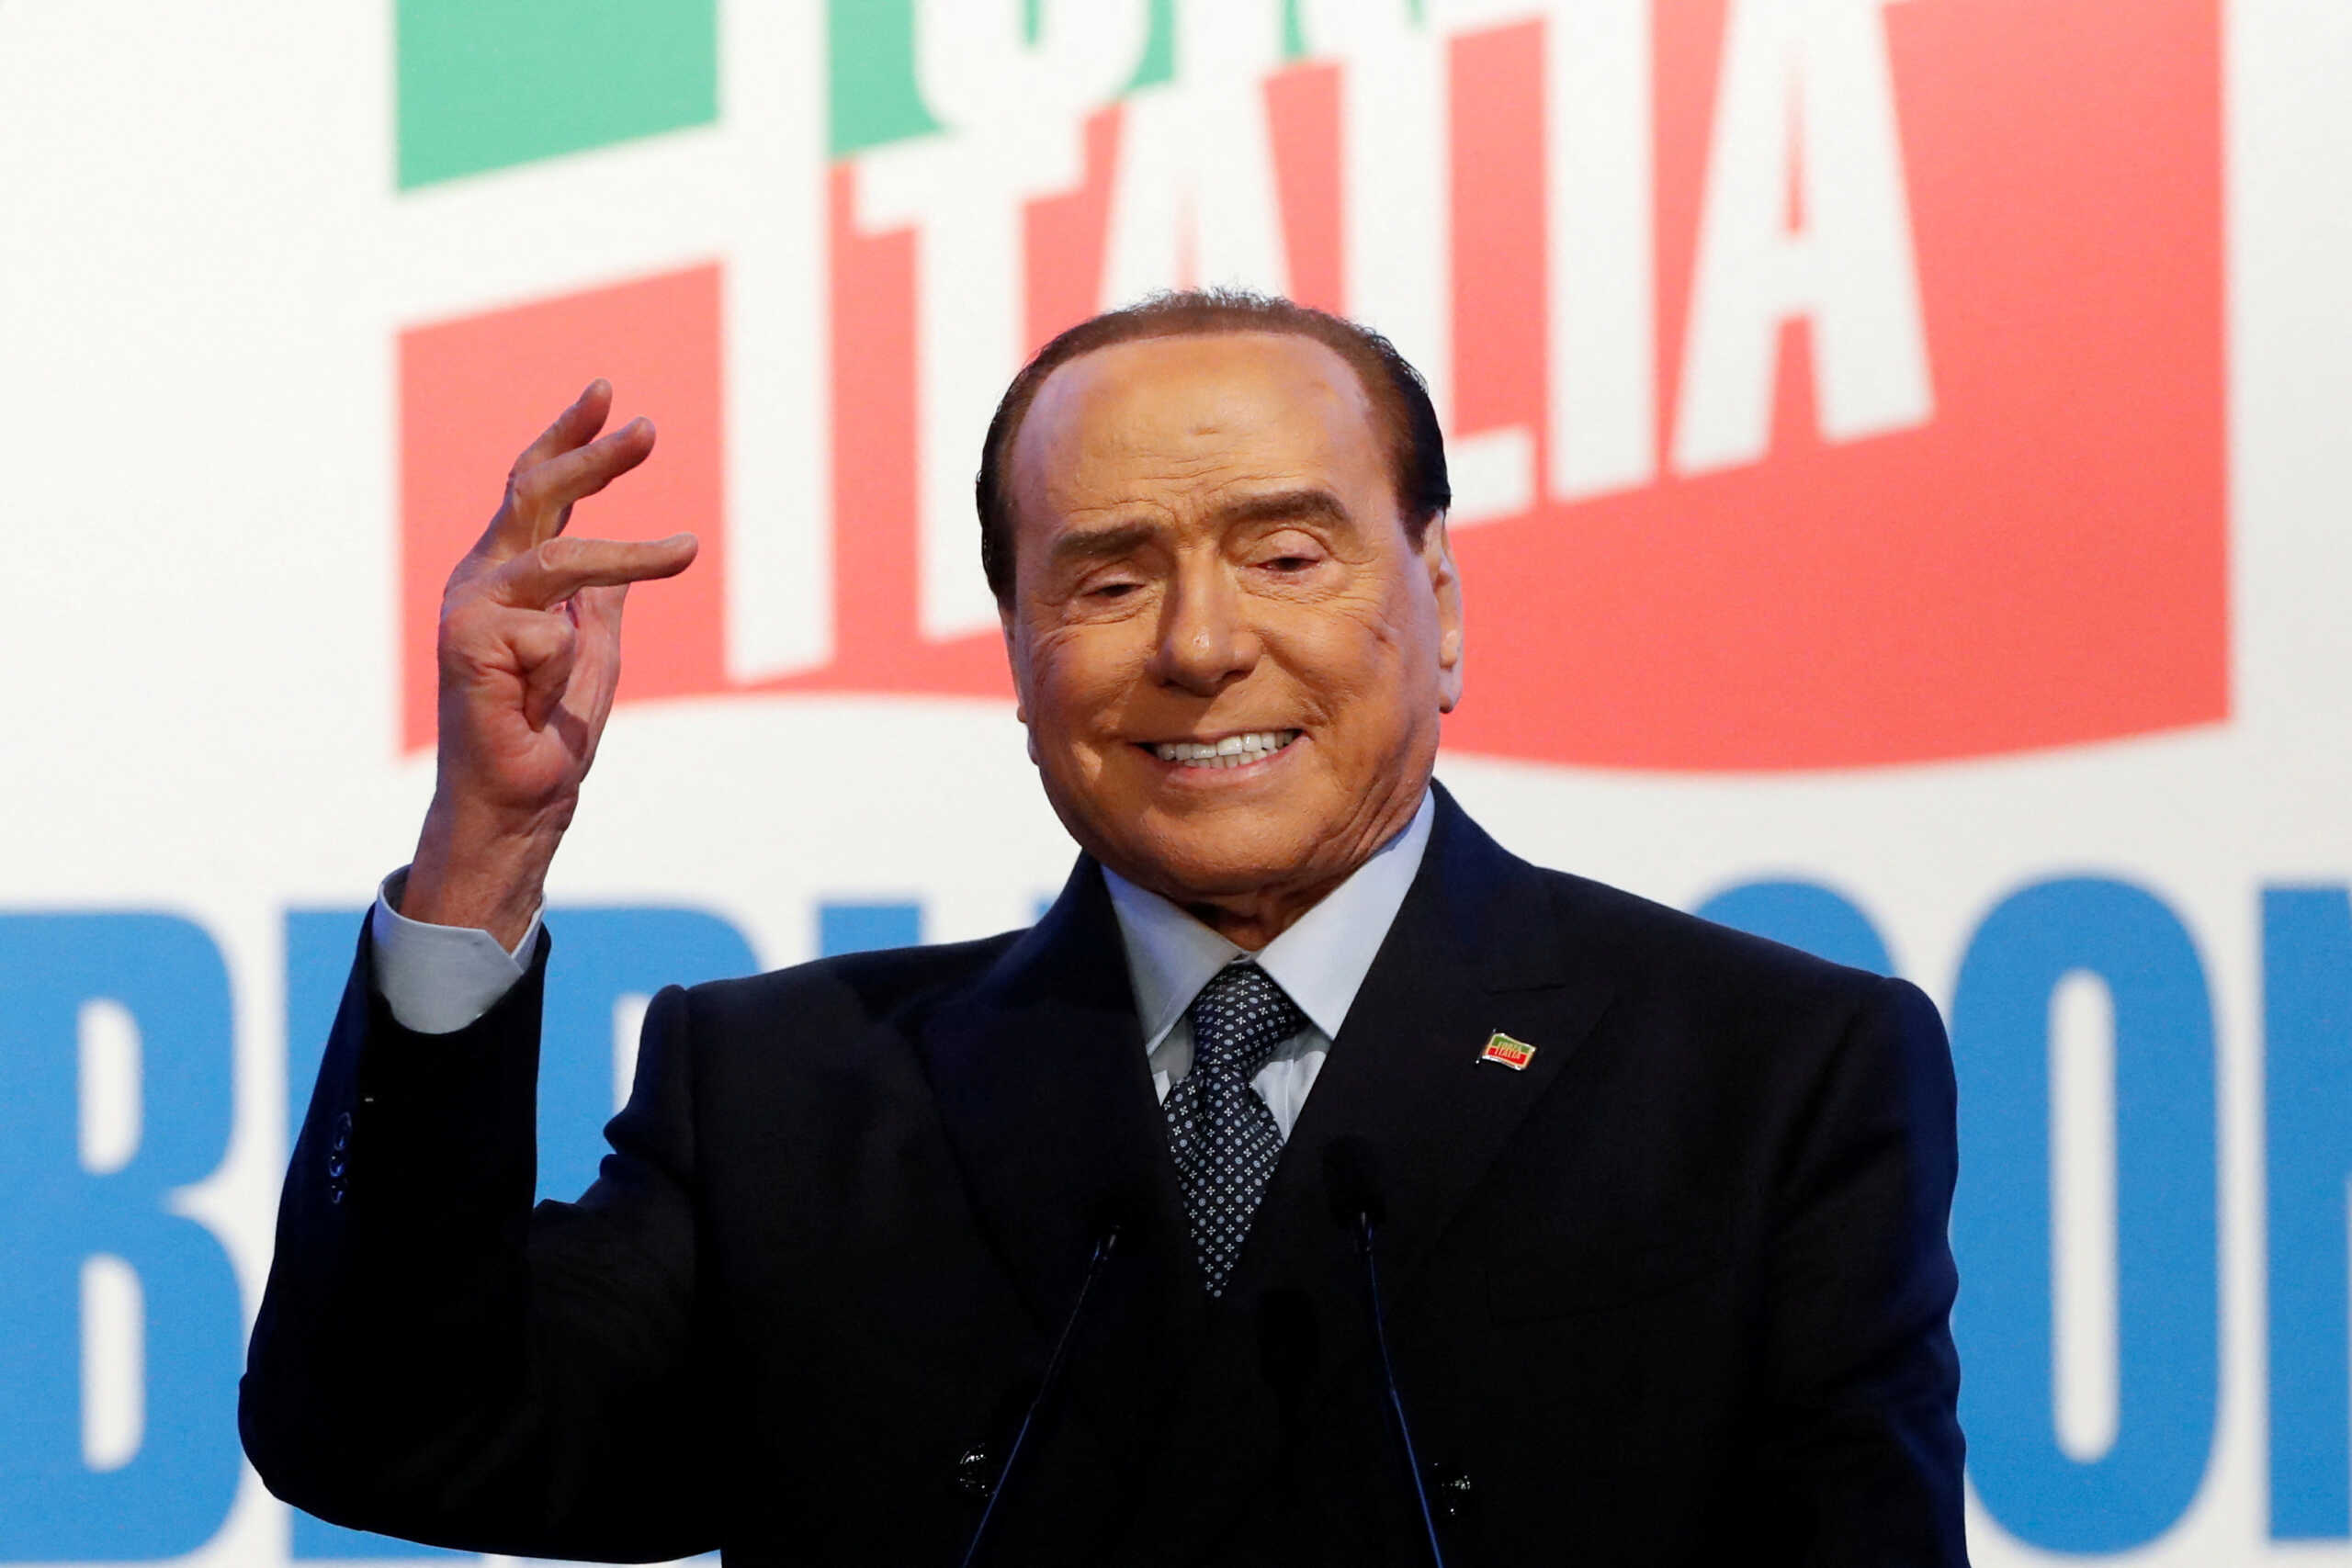 Εκλογές στην Ιταλία: Ο Μπερλουσκόνι υπόσχεται γη και ύδωρ